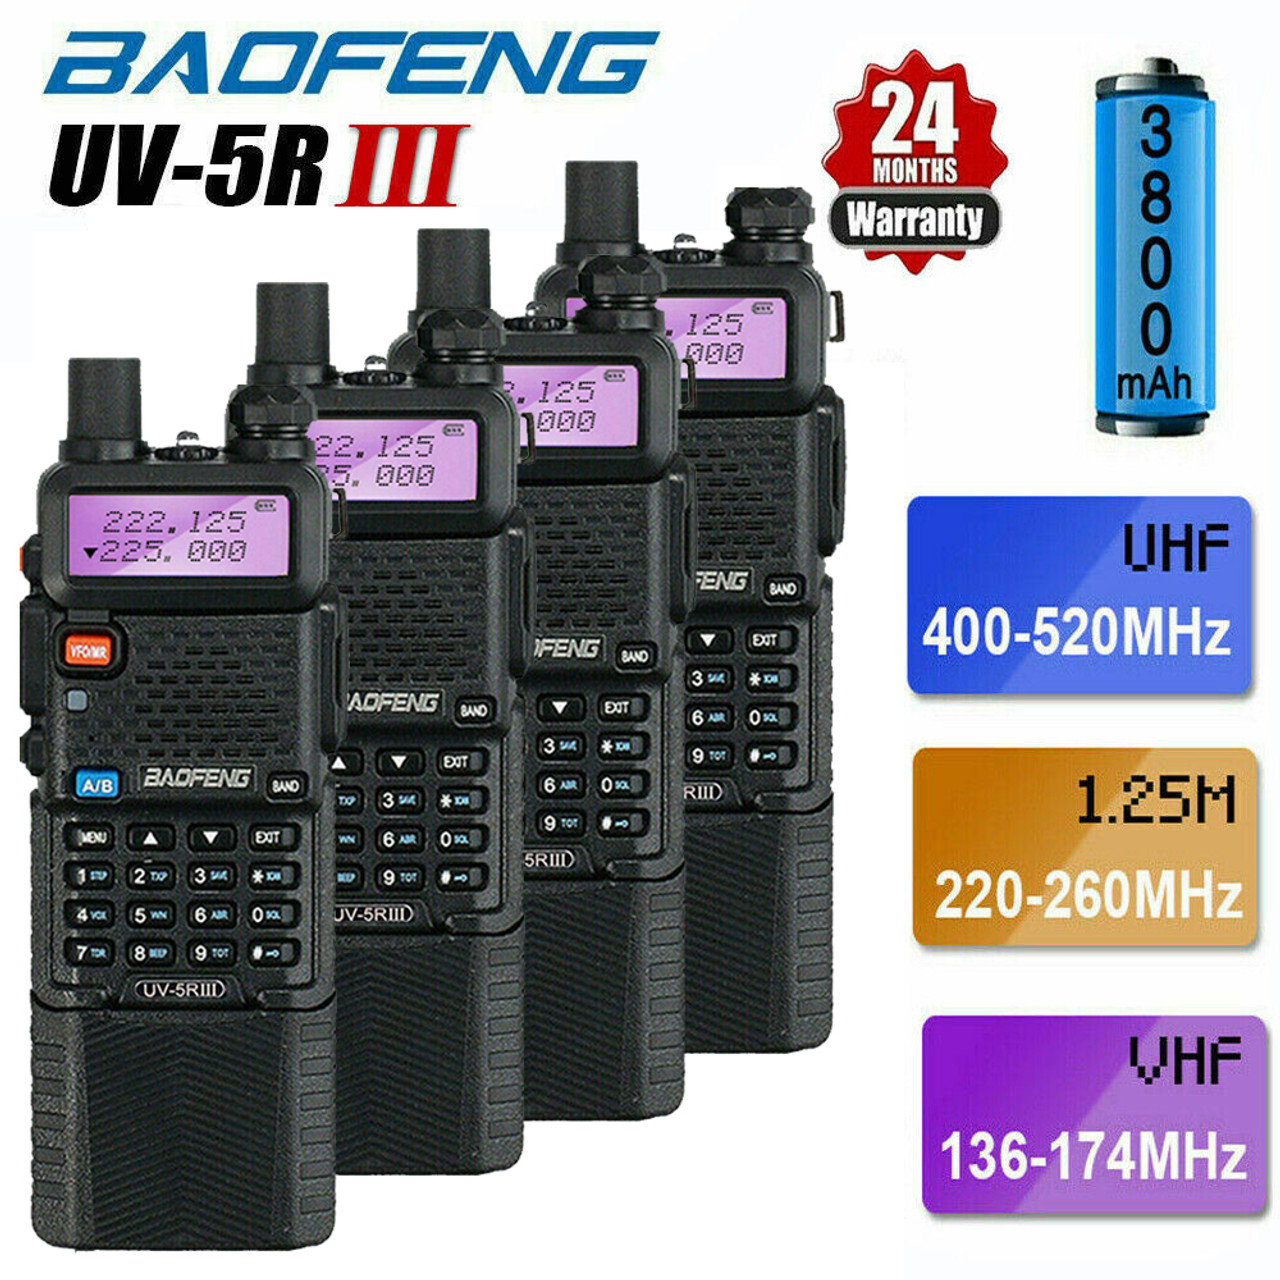 Baofeng Radio UK x BAOFENG UV-5R III Tri-Band VHF/UHF 3800mAH Walkie  Talkies Long Range Ham Radio